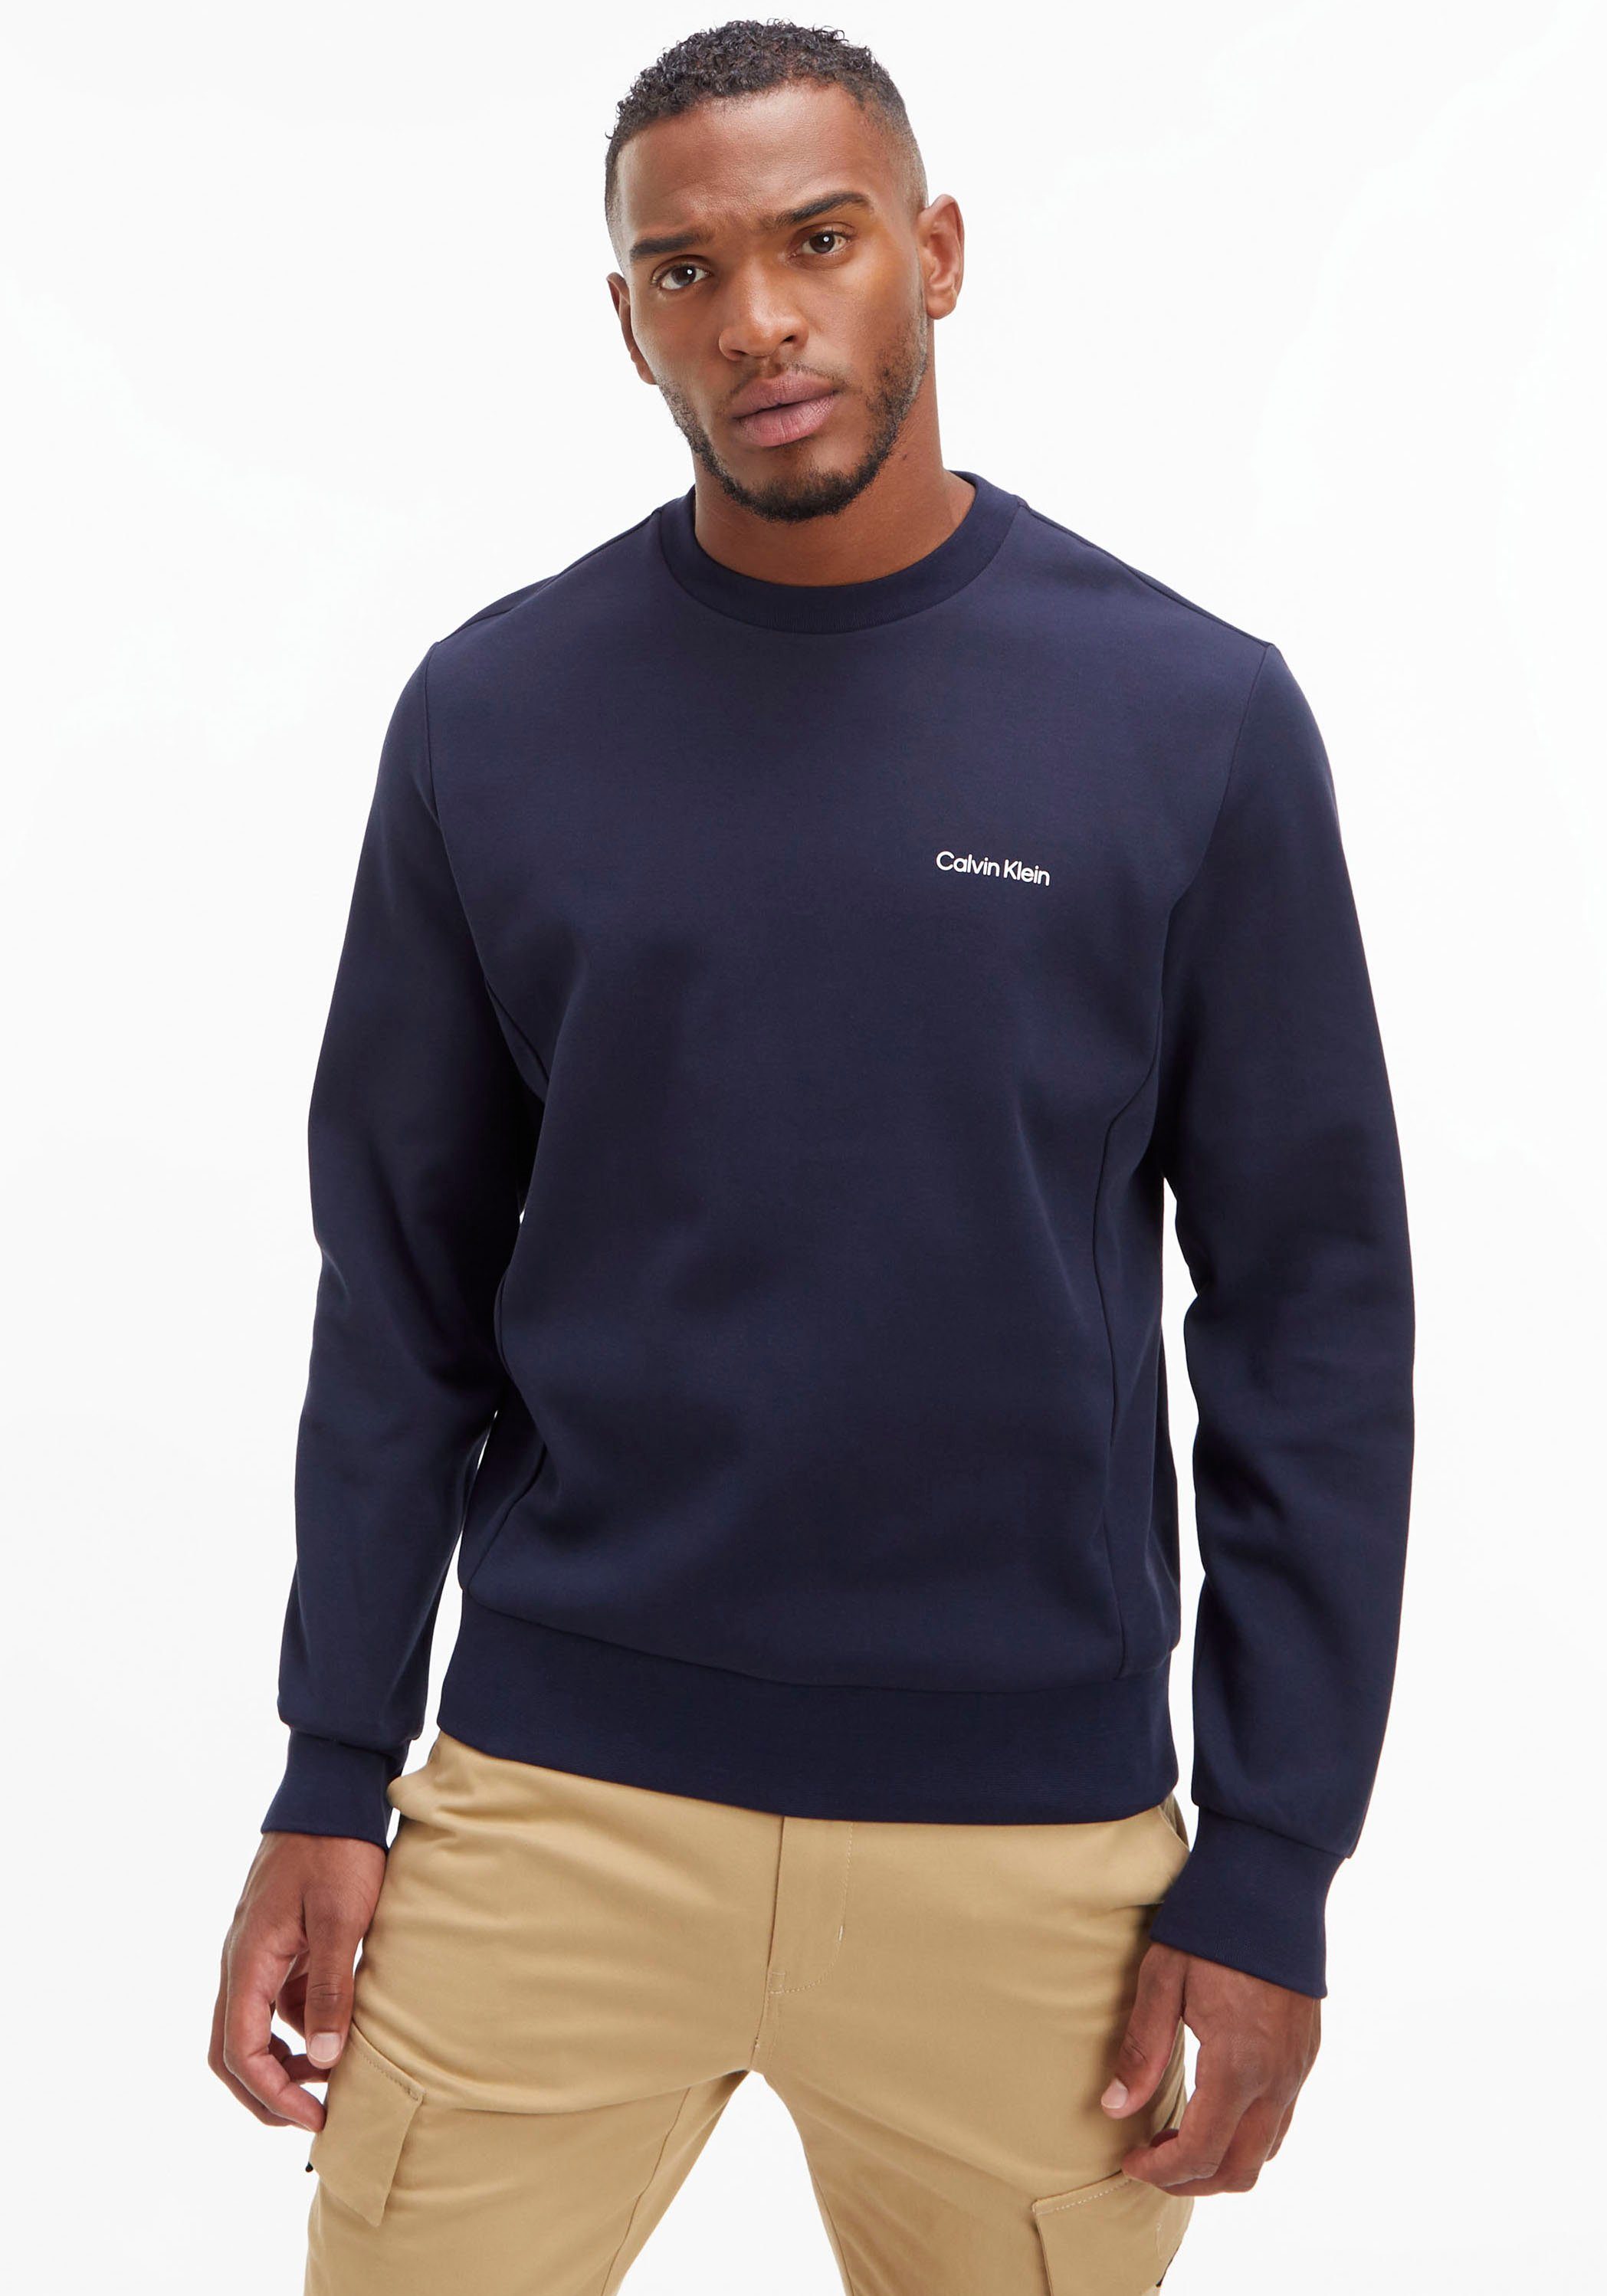 Calvin Klein Sweatshirt MICRO LOGO REPREVE SWEATSHIRT mit halsnahmen Rundhalsausschnitt marine